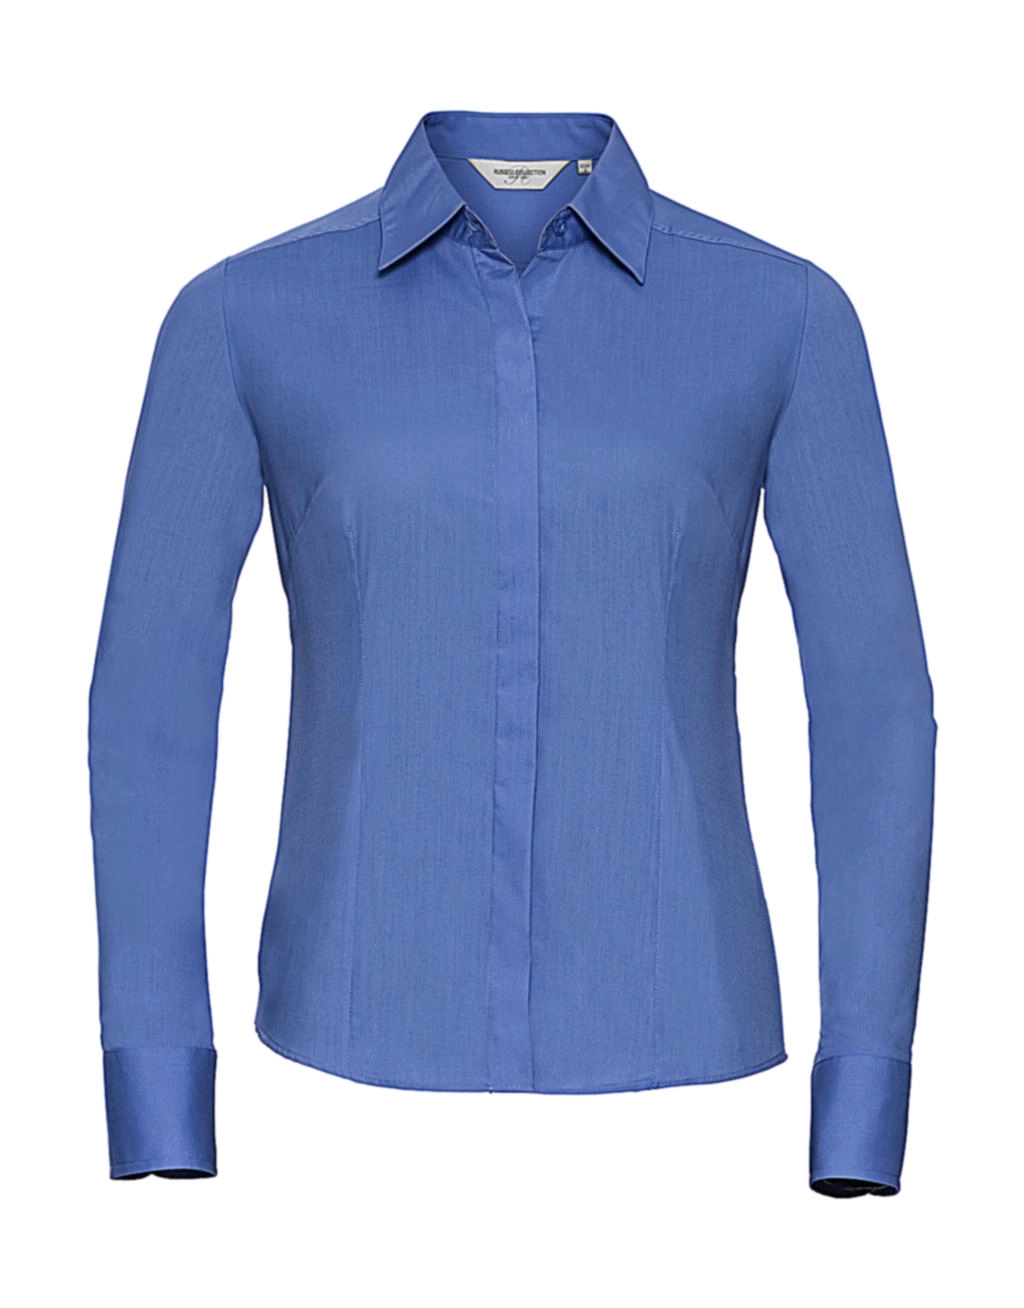 Ladies` LS Fitted Poplin Shirt zum Besticken und Bedrucken in der Farbe Corporate Blue mit Ihren Logo, Schriftzug oder Motiv.